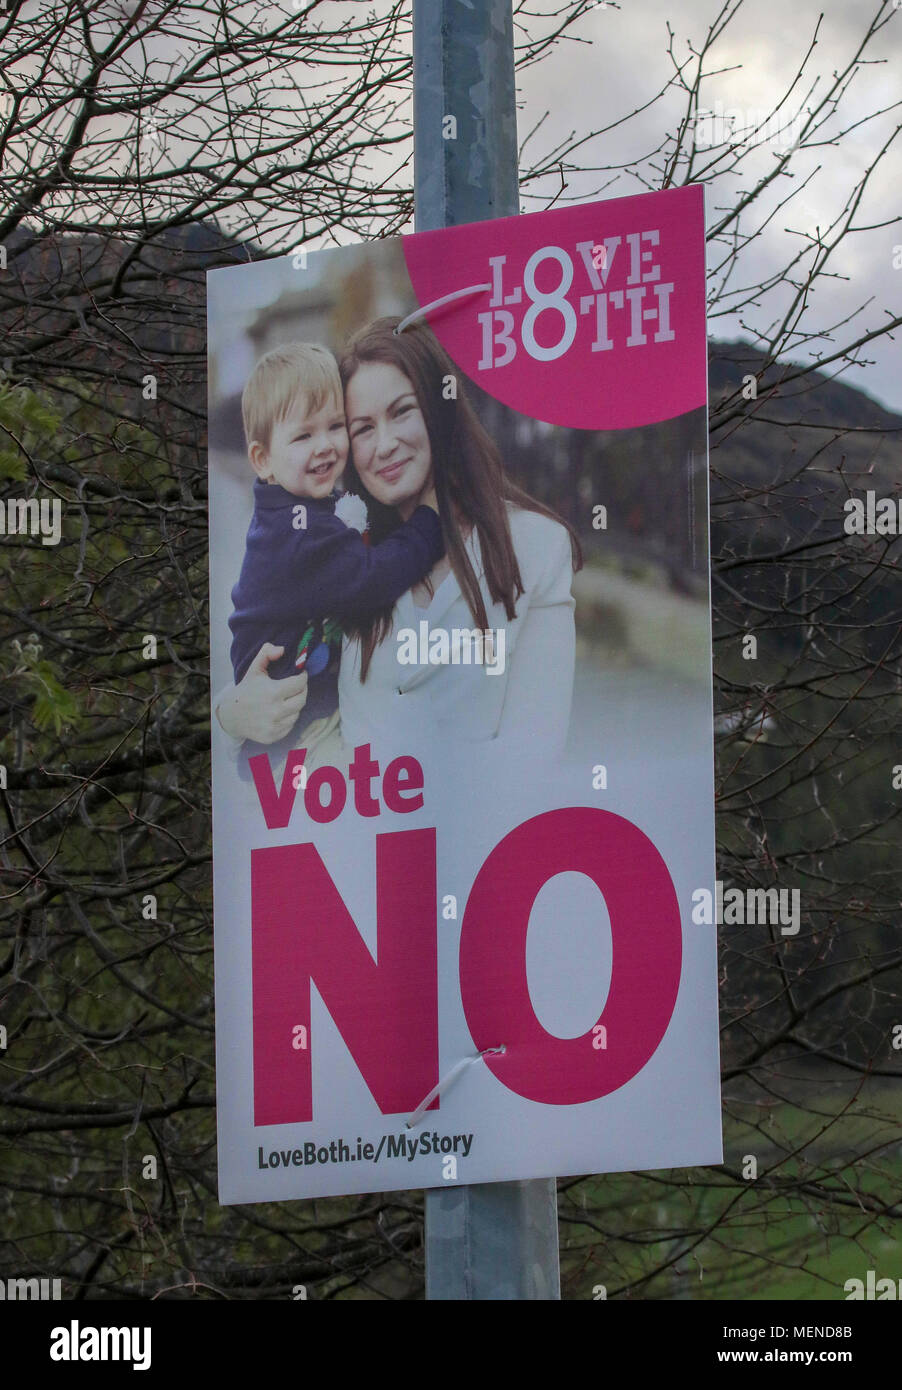 Irische Abtreibung - ein Referendum mit Nein stimmen Plakat vor dem irischen Referendum die Achte Änderung Aufhebung am 25. Mai 2018. Stockfoto